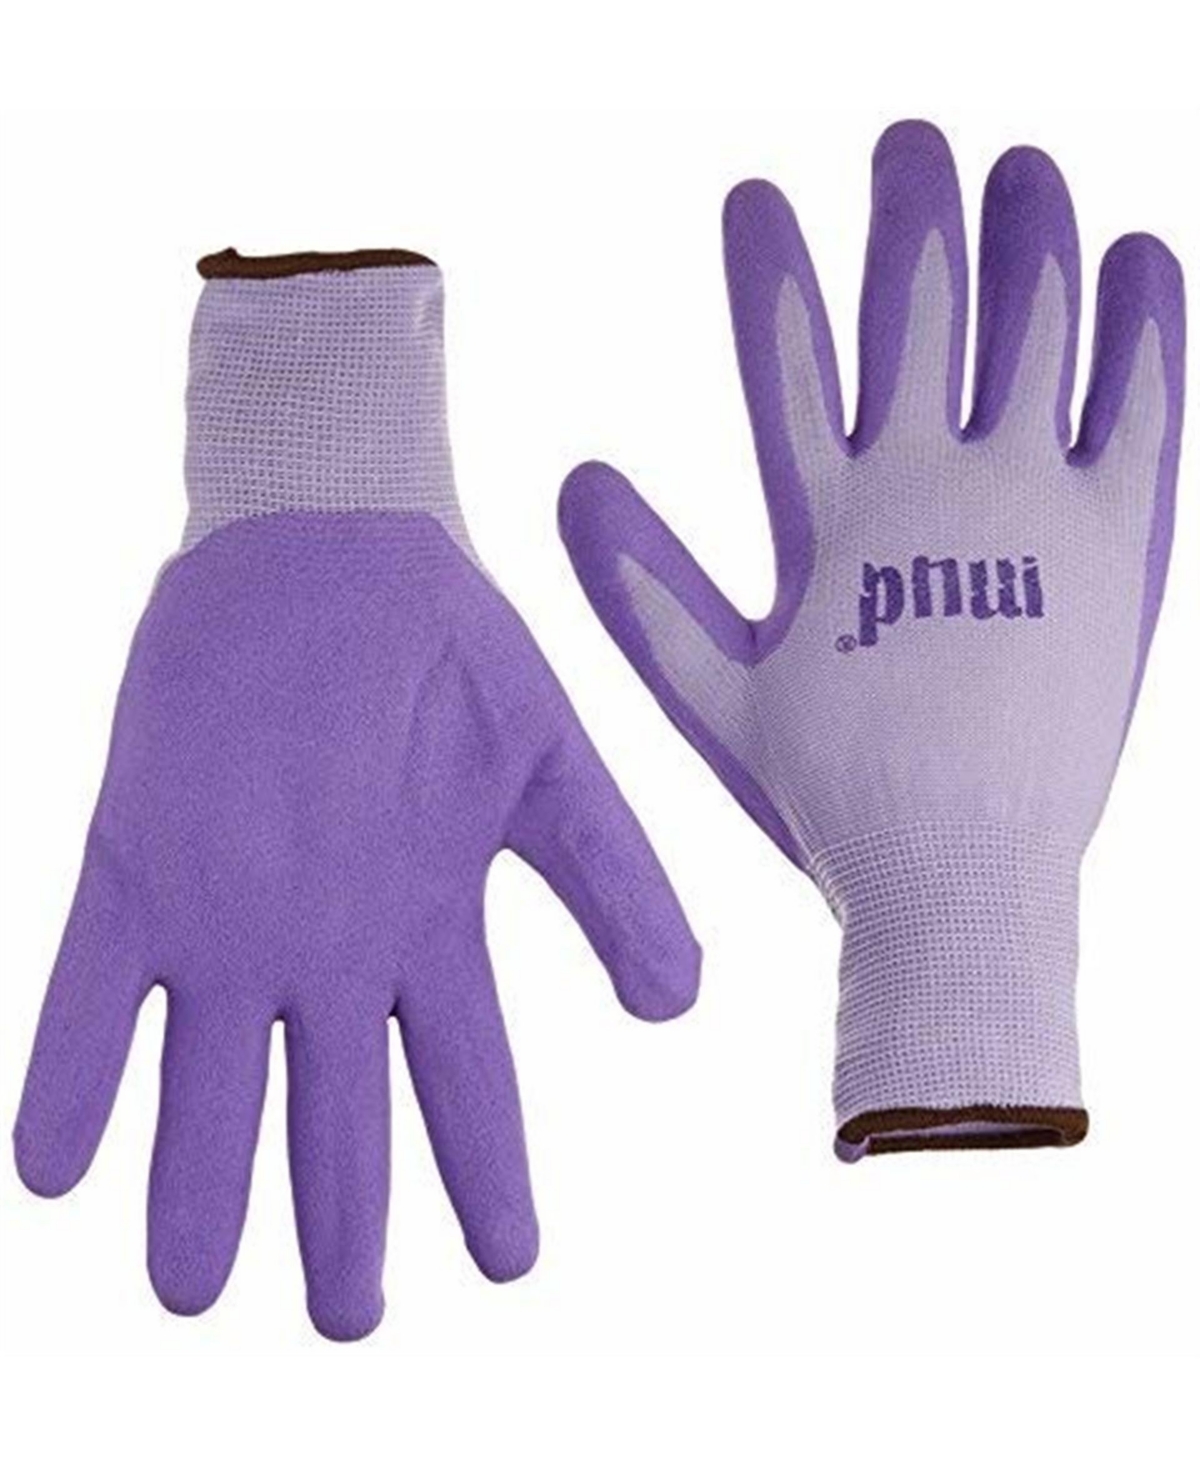 Mud Simply Mud Gloves, Purple, Size Large - Purple